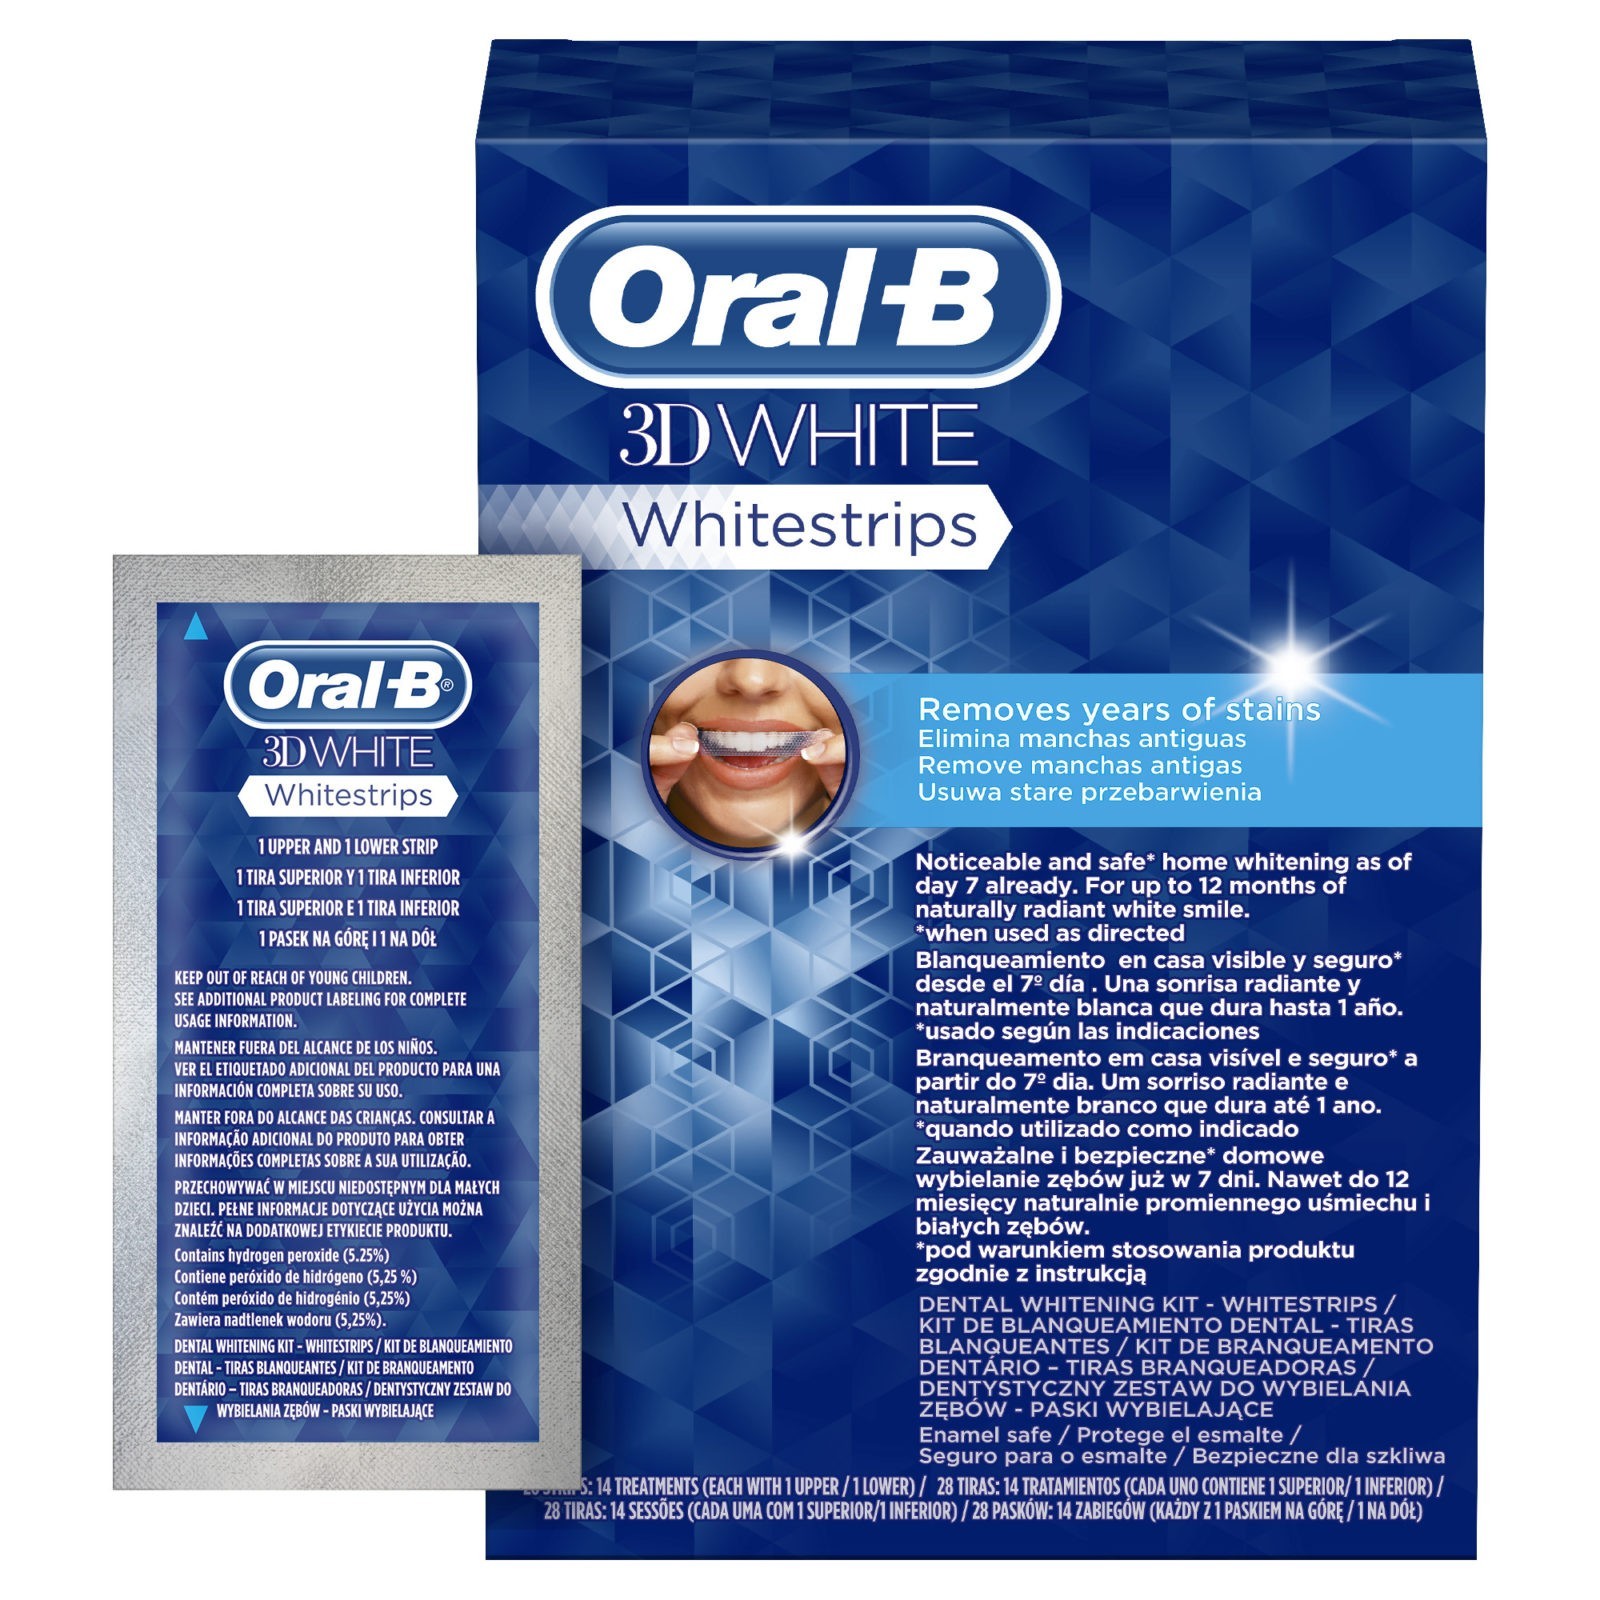 oral b